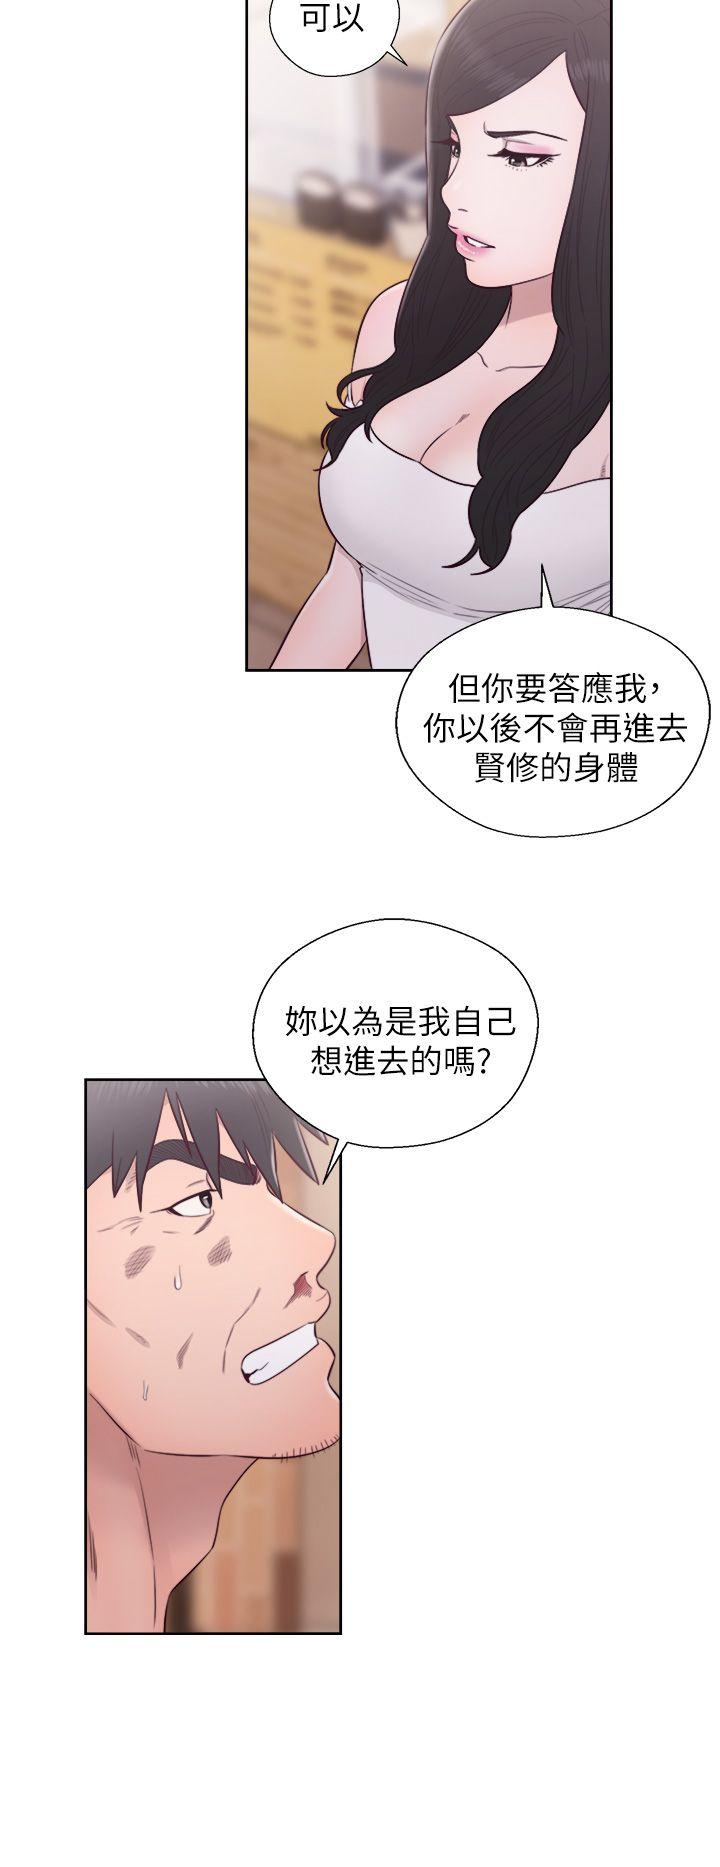 韩国污漫画 青春:逆齡小鮮肉 最终话 23